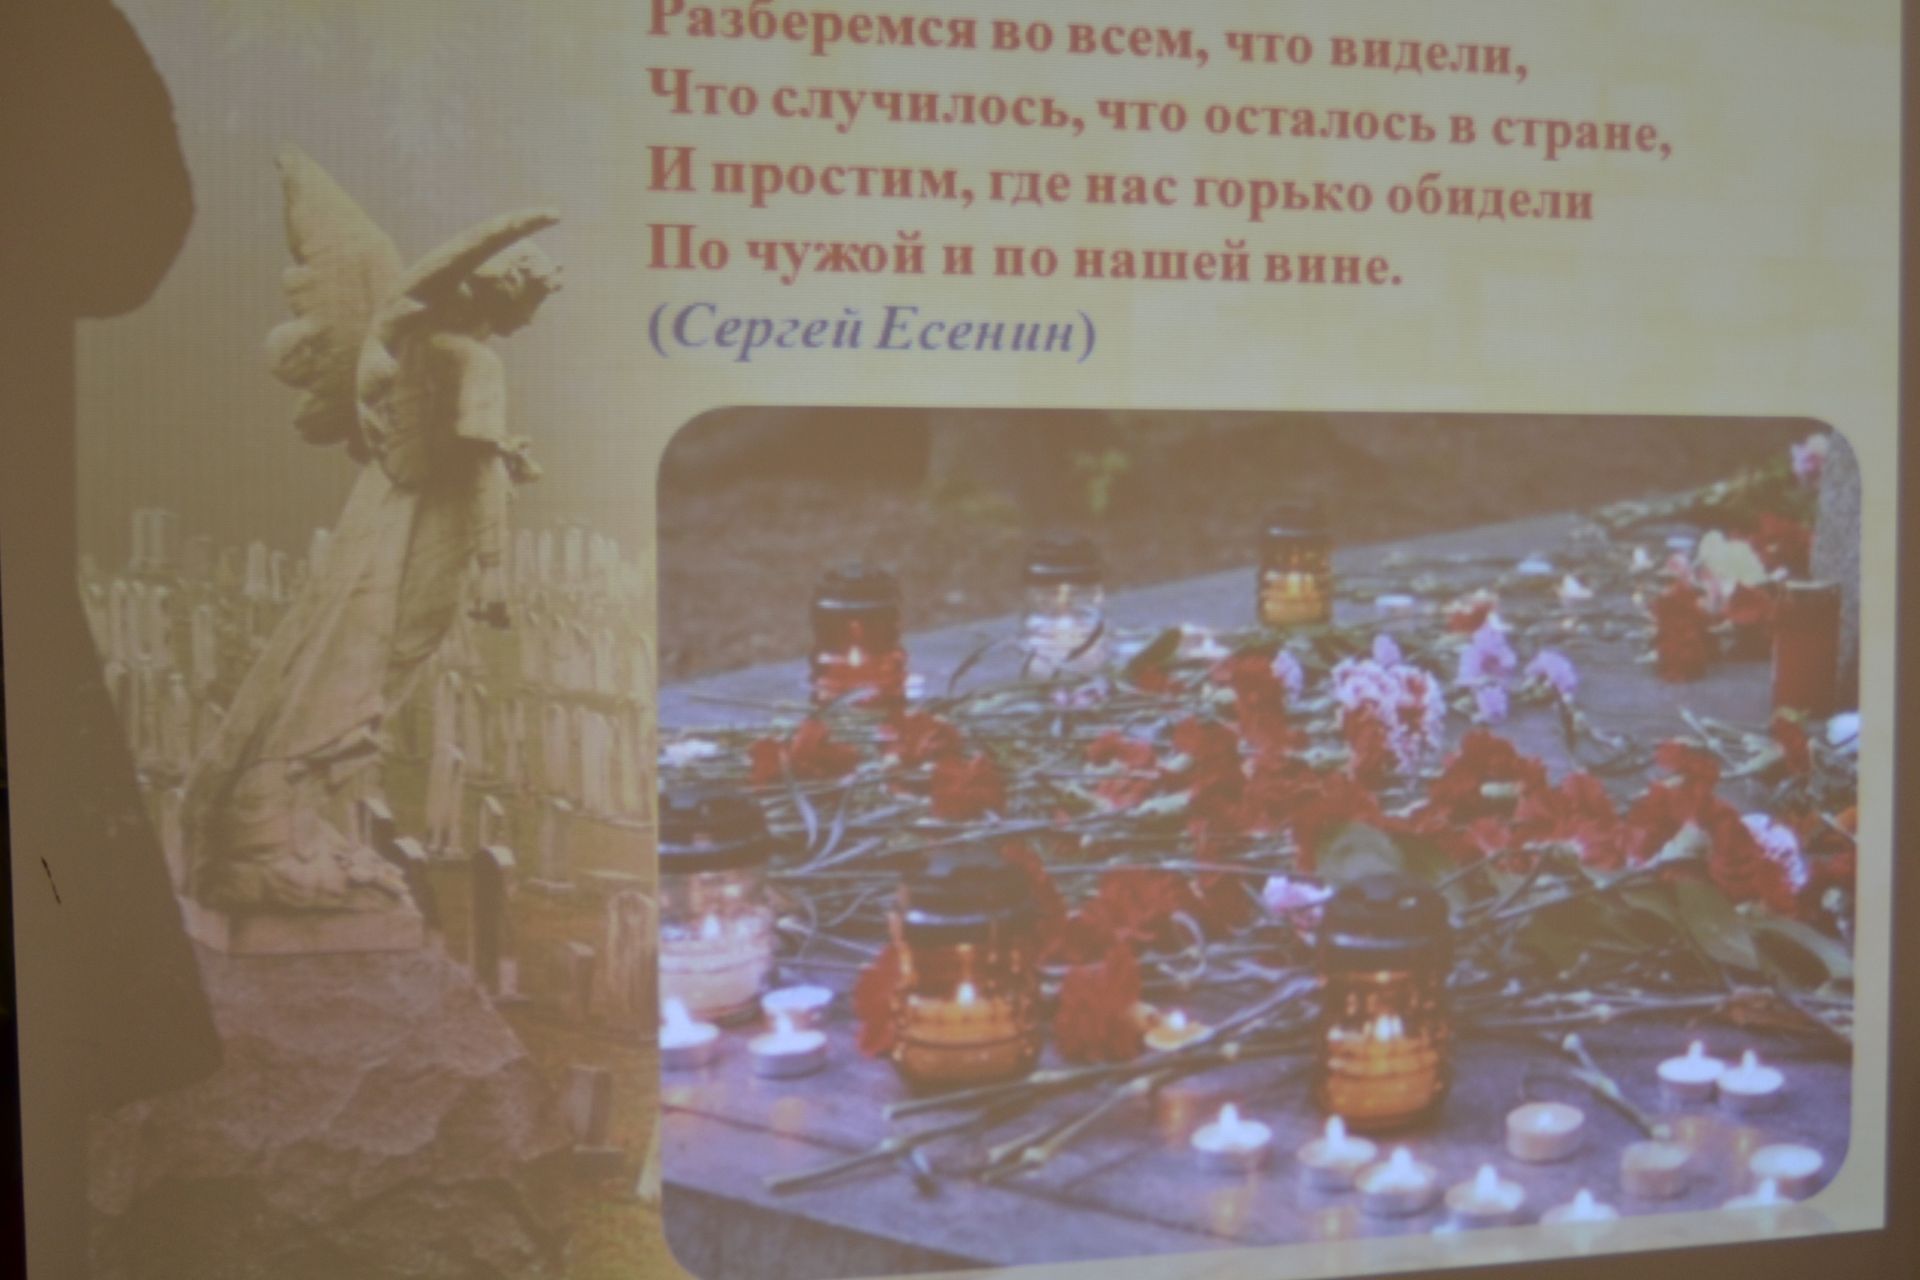 В посёлке Татарстан провели урок памяти, посвященный дню памяти жертв политический репрессий